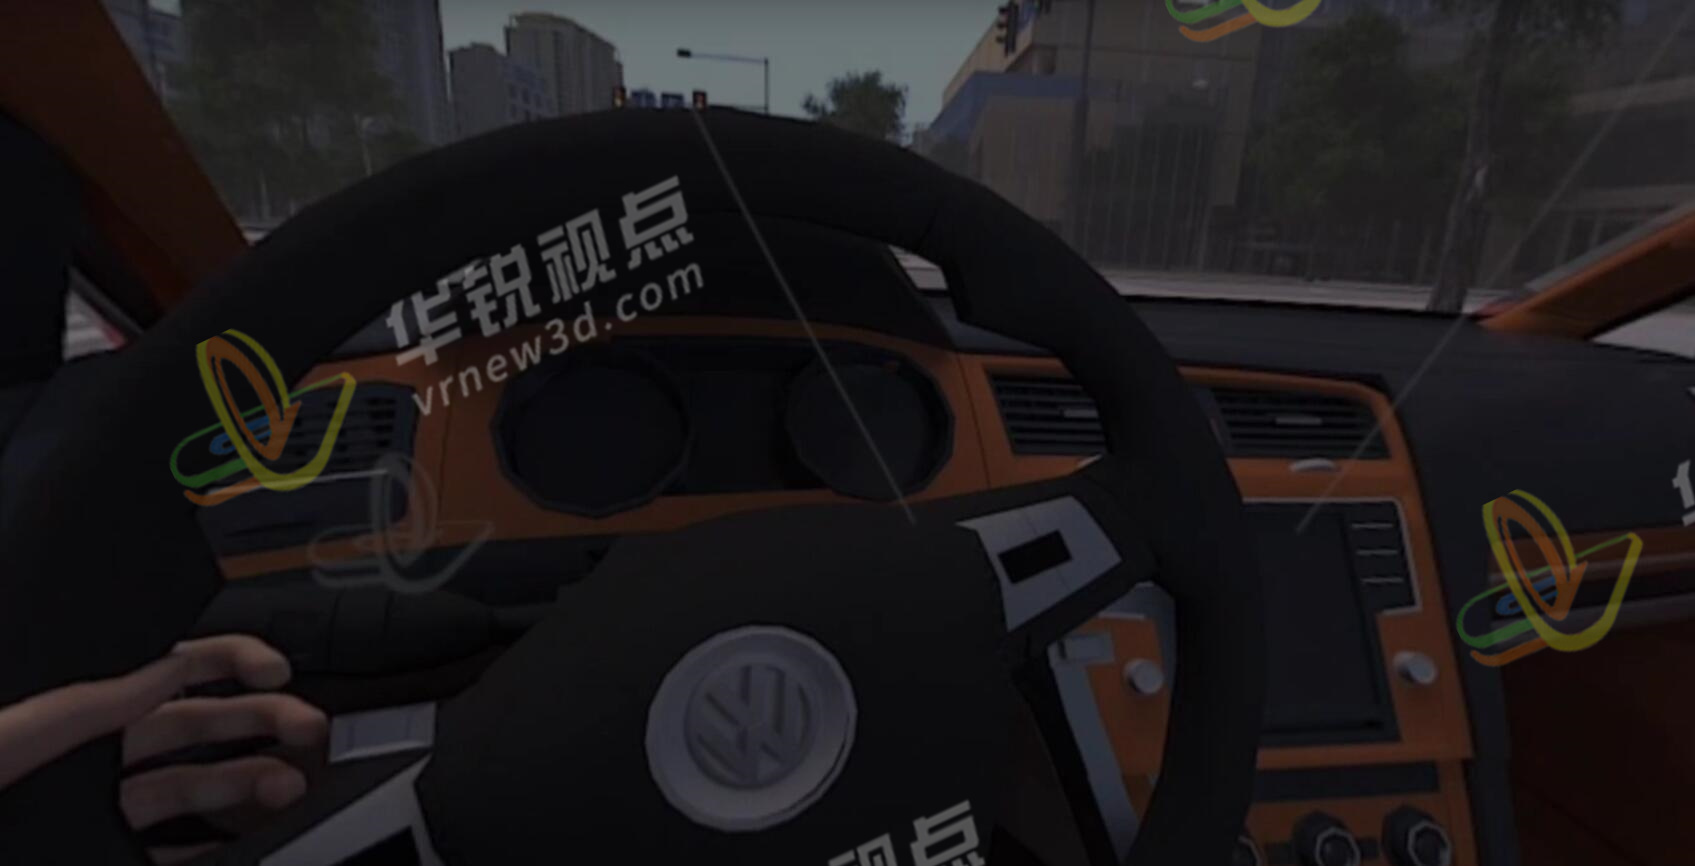 酒后驾车事故VR模拟体验